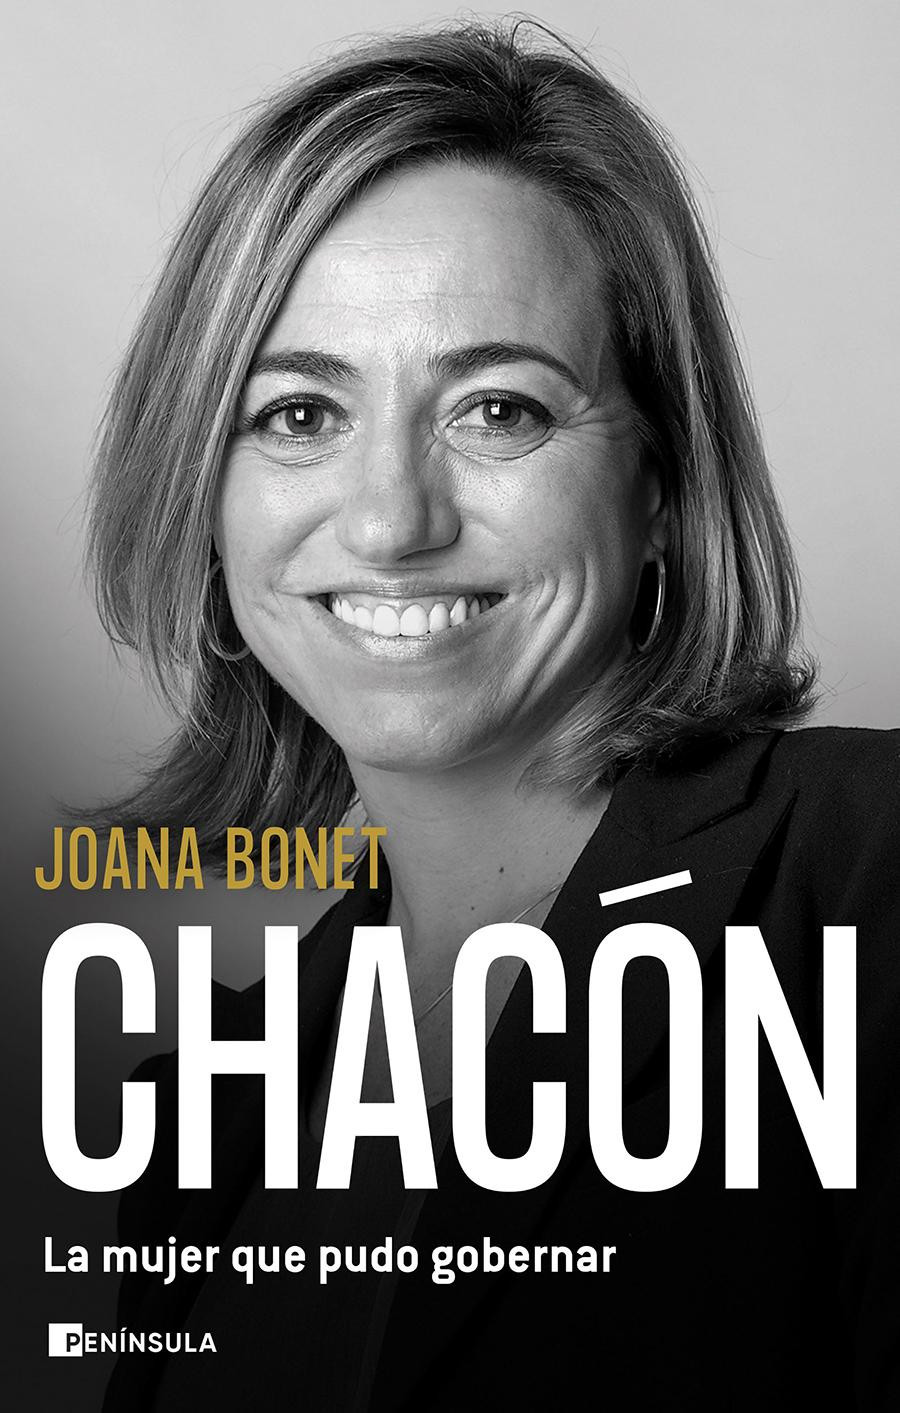 Portada del libro de Joana Bonet sobre Carme Chacón